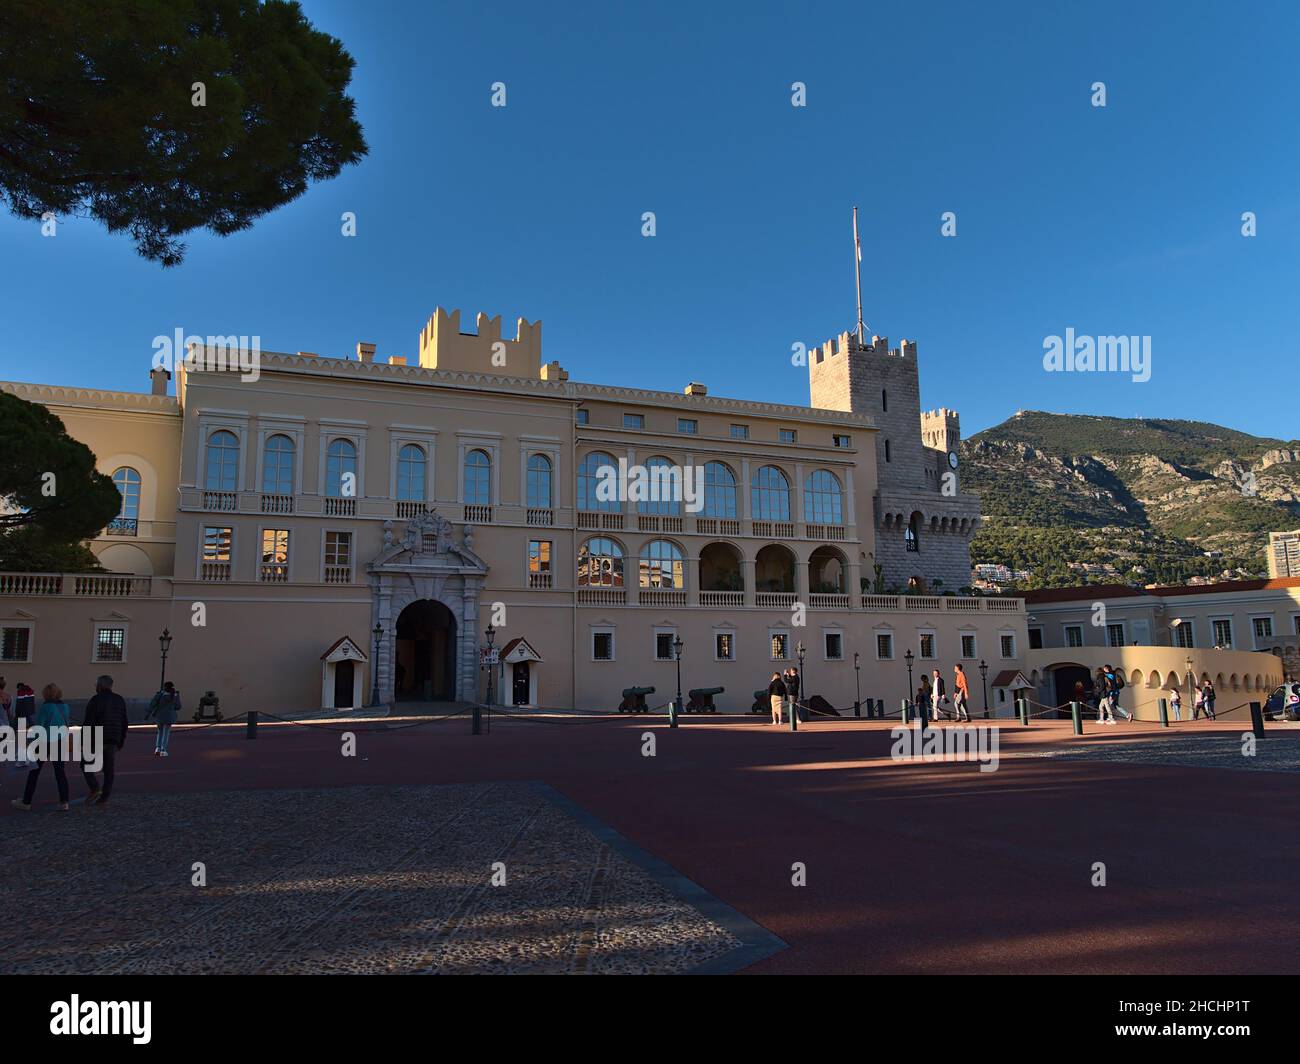 Vue sur le célèbre Palais du Prince de Monaco, la résidence officielle du Prince souverain, dans l'après-midi avec les touristes qui se promènaient dans les montagnes. Banque D'Images